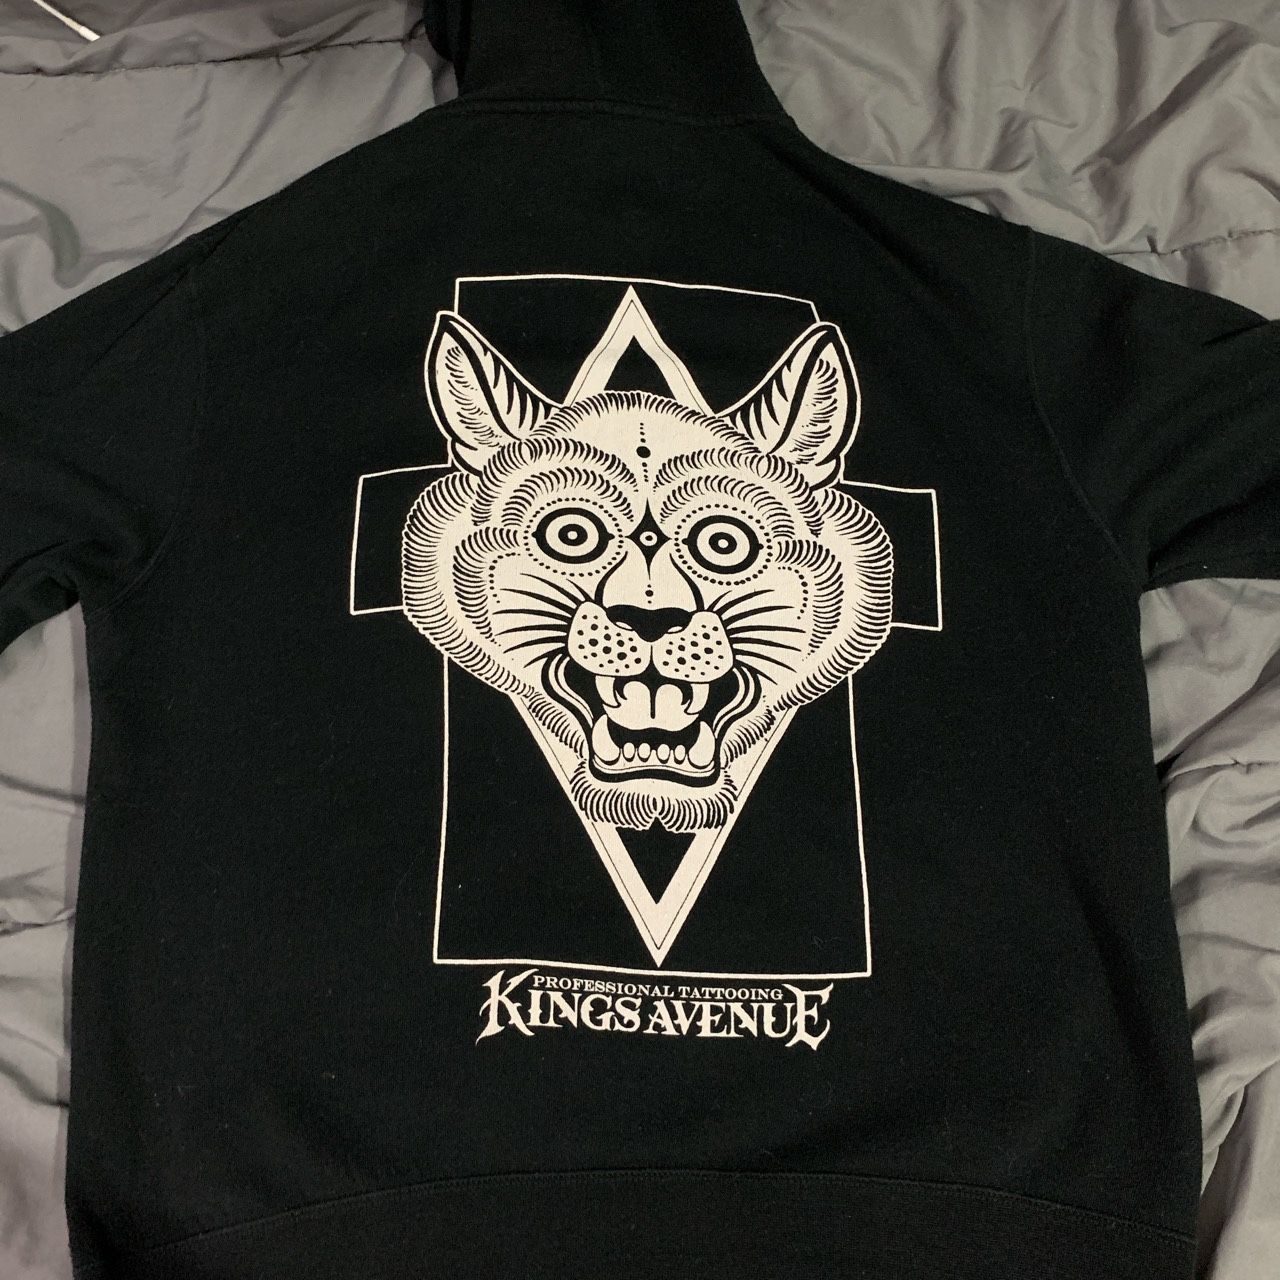 Kings Avenue tattoo shop zip up hoodie